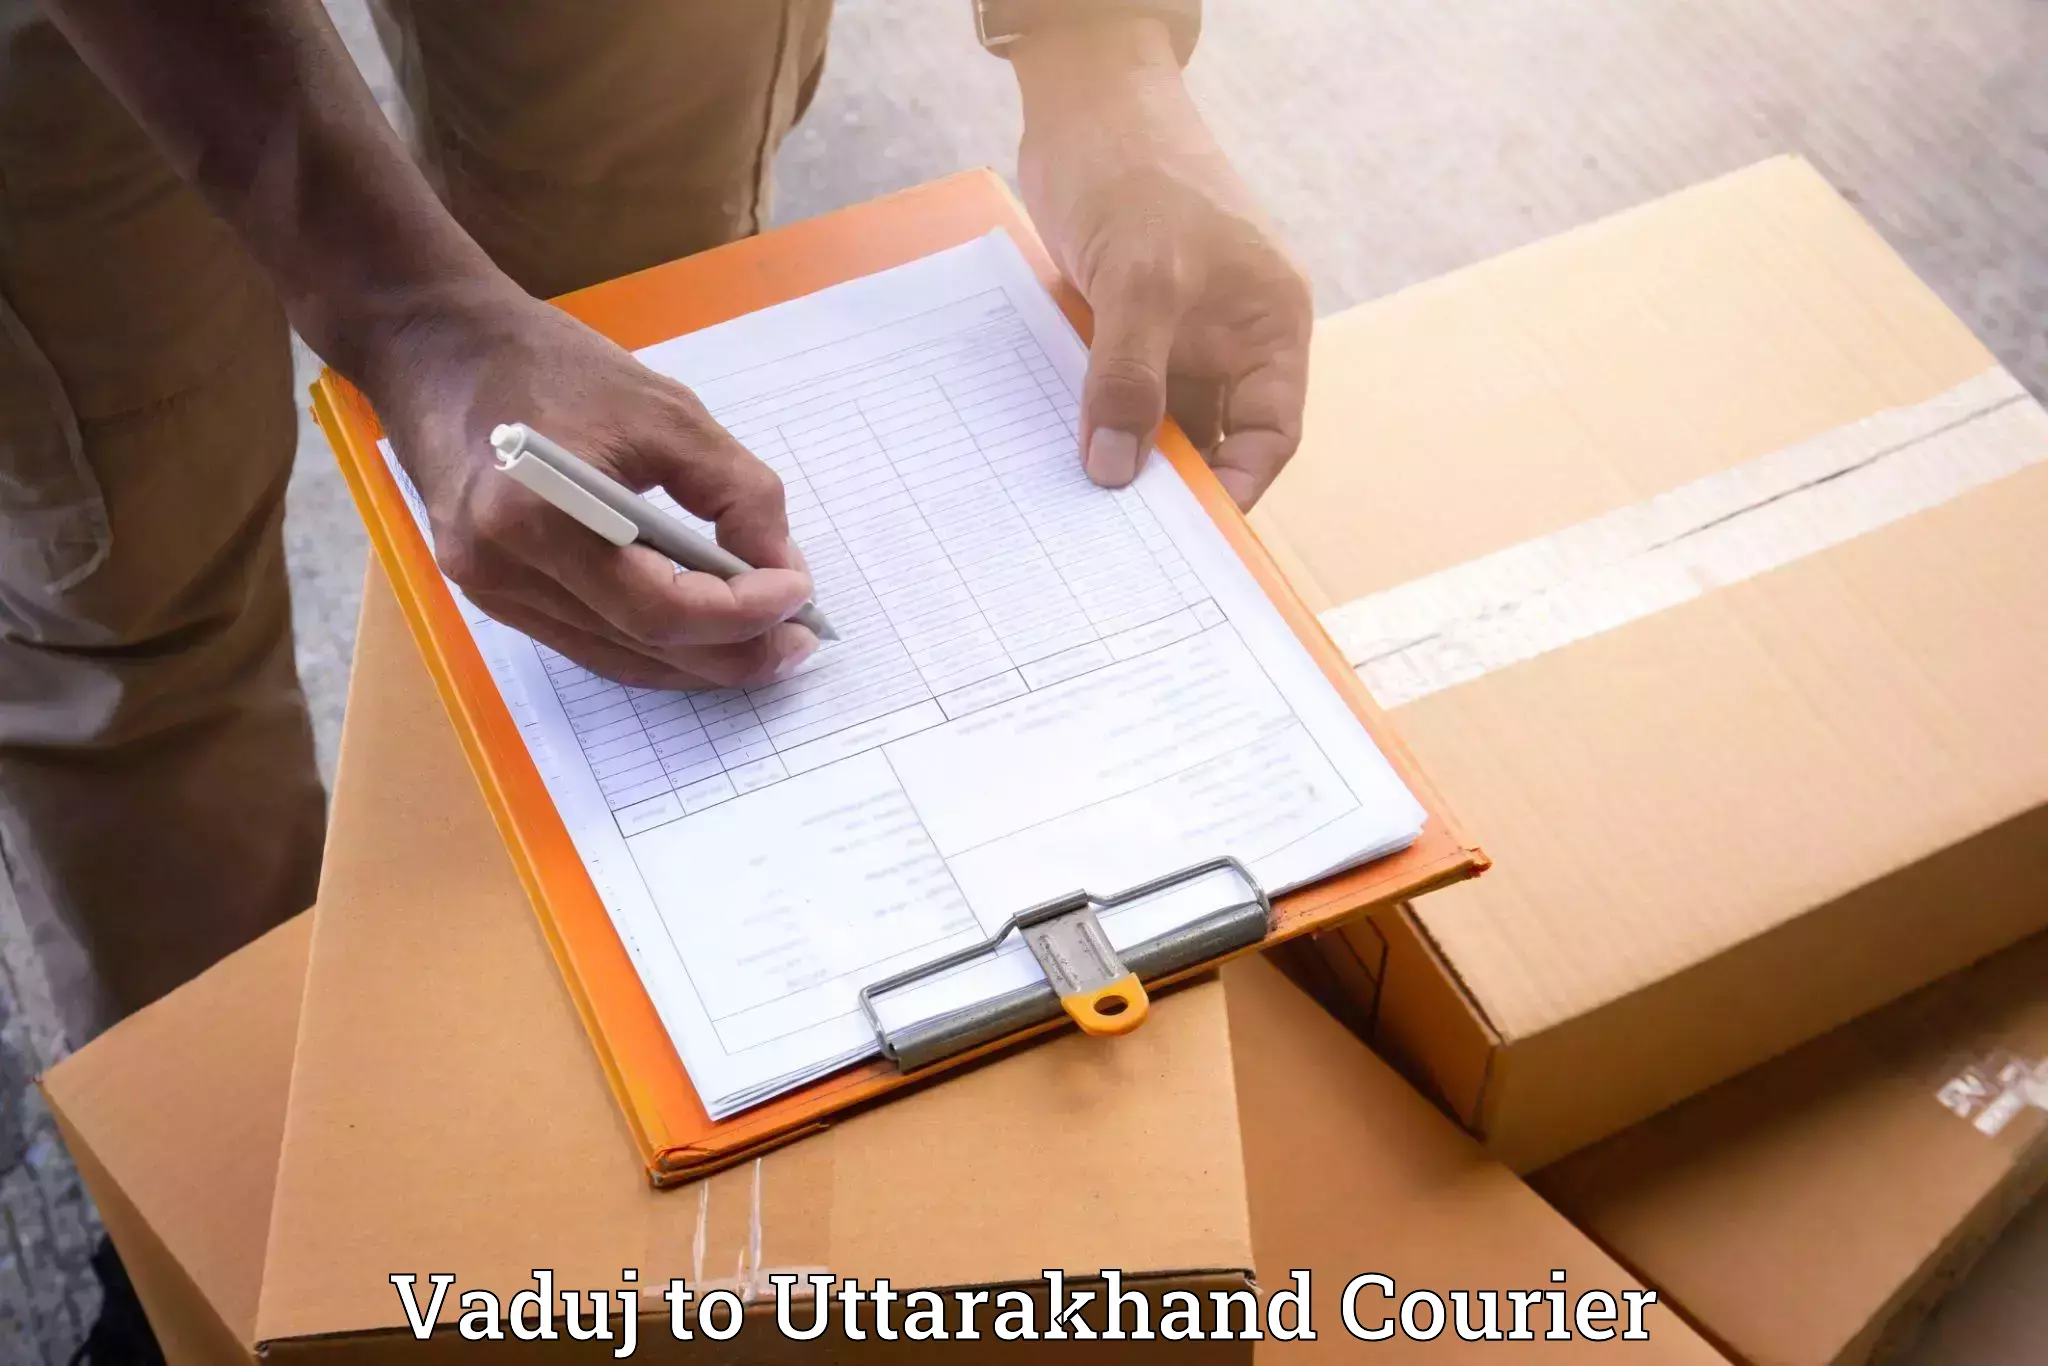 Full-service relocation in Vaduj to Uttarakhand